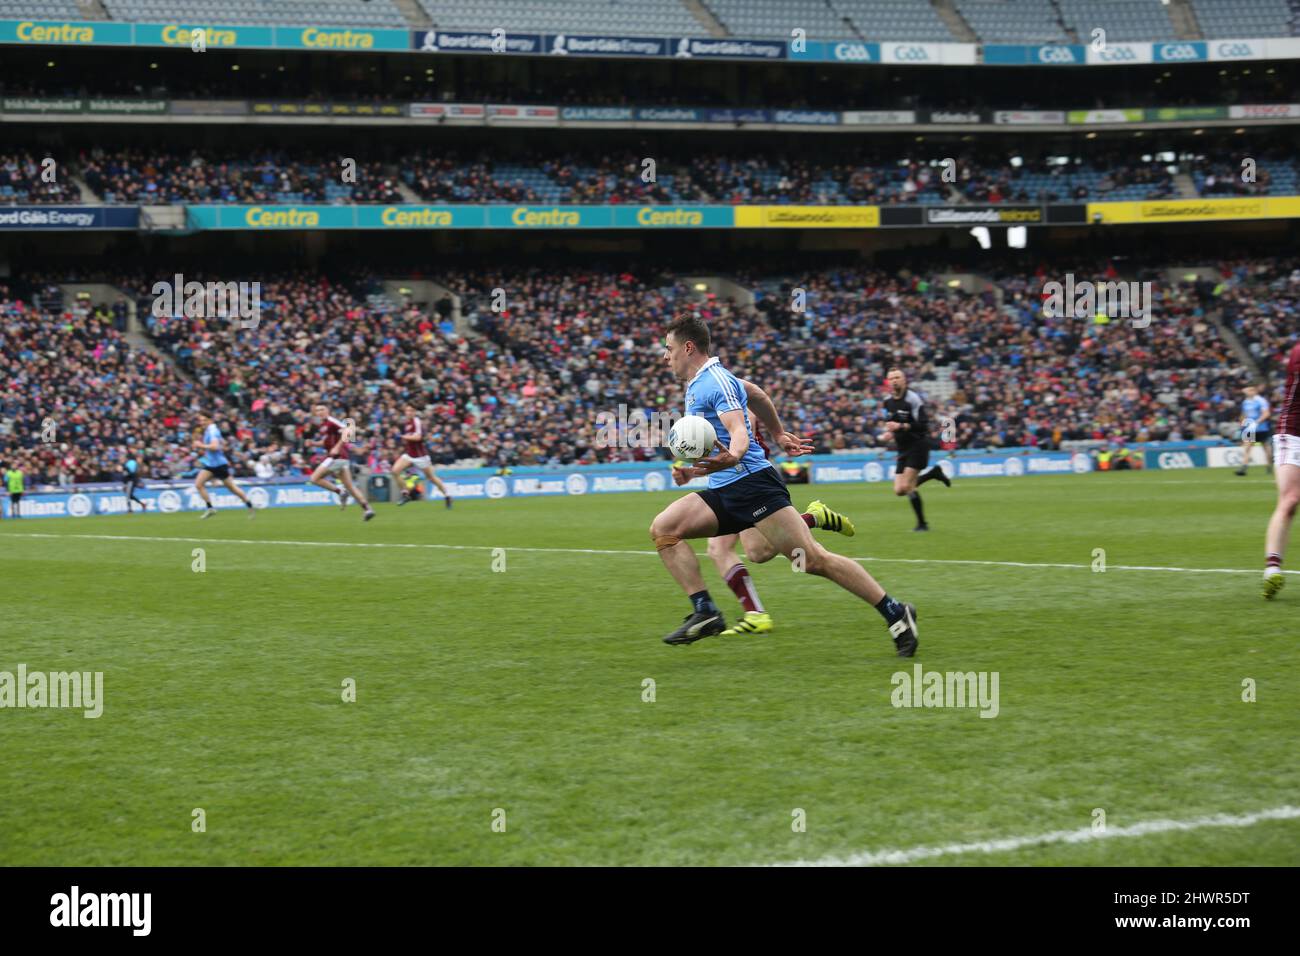 Una scena di una partita di calcio gaelica a Dublino, in Irlanda, come giocatore di Dublino porta la palla in avanti. Foto Stock